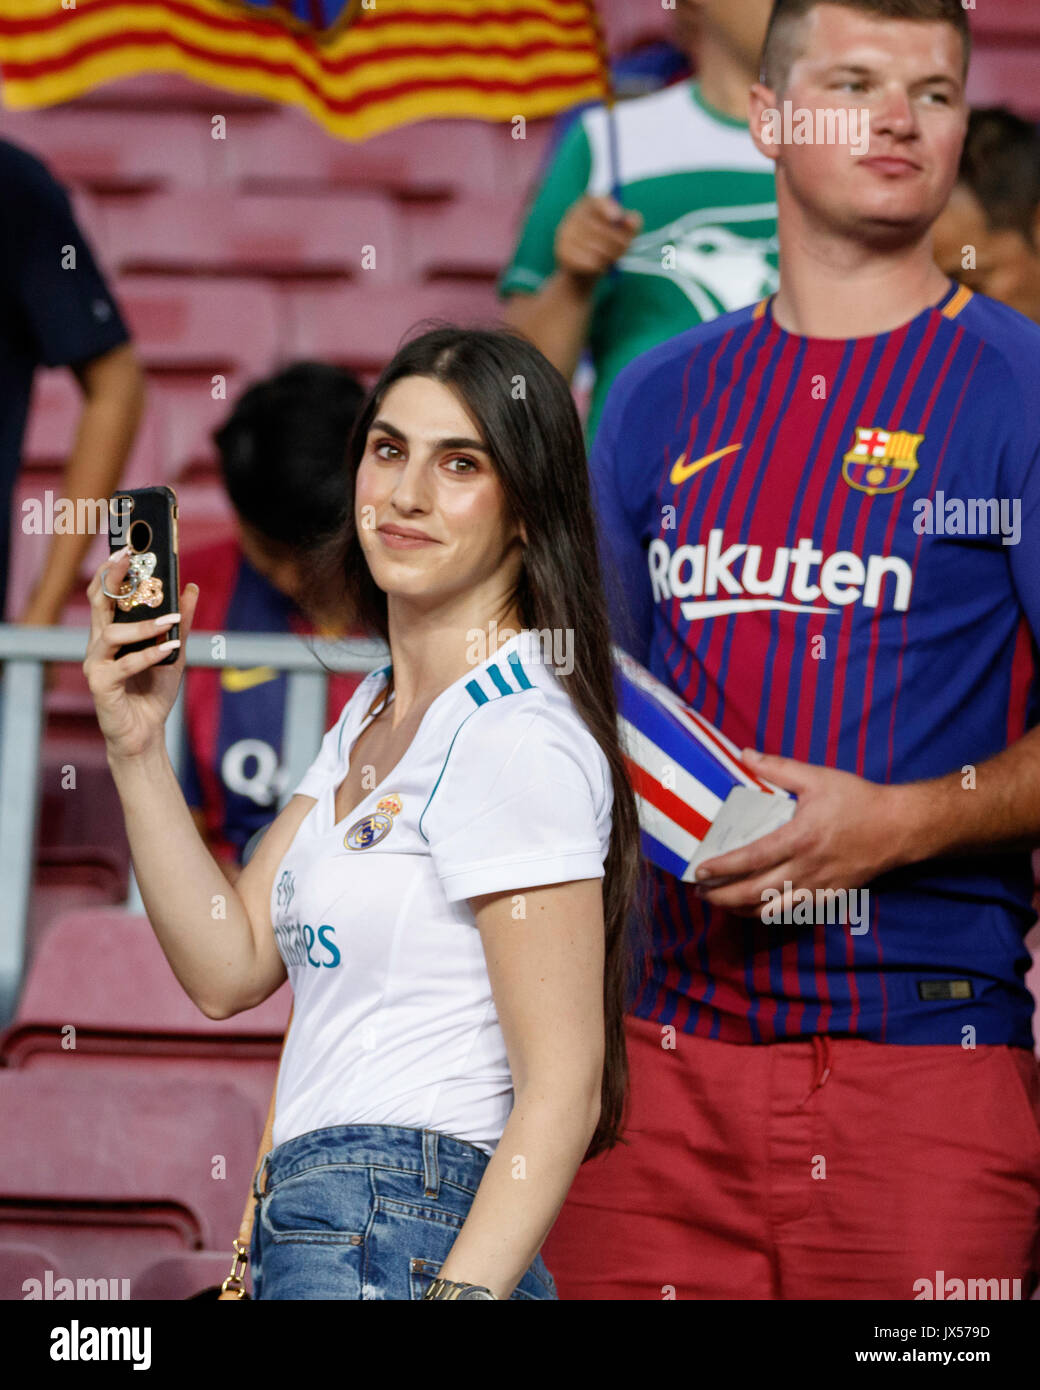 Das Stadion Camp Nou, Barcelona, Spanien. 13 August, 2017. Super Cup von Spanien zwischen dem FC Barcelona und Real Madrid. Fans kurz vor dem Spiel. Quelle: David Ramírez/Alamy leben Nachrichten Stockfoto